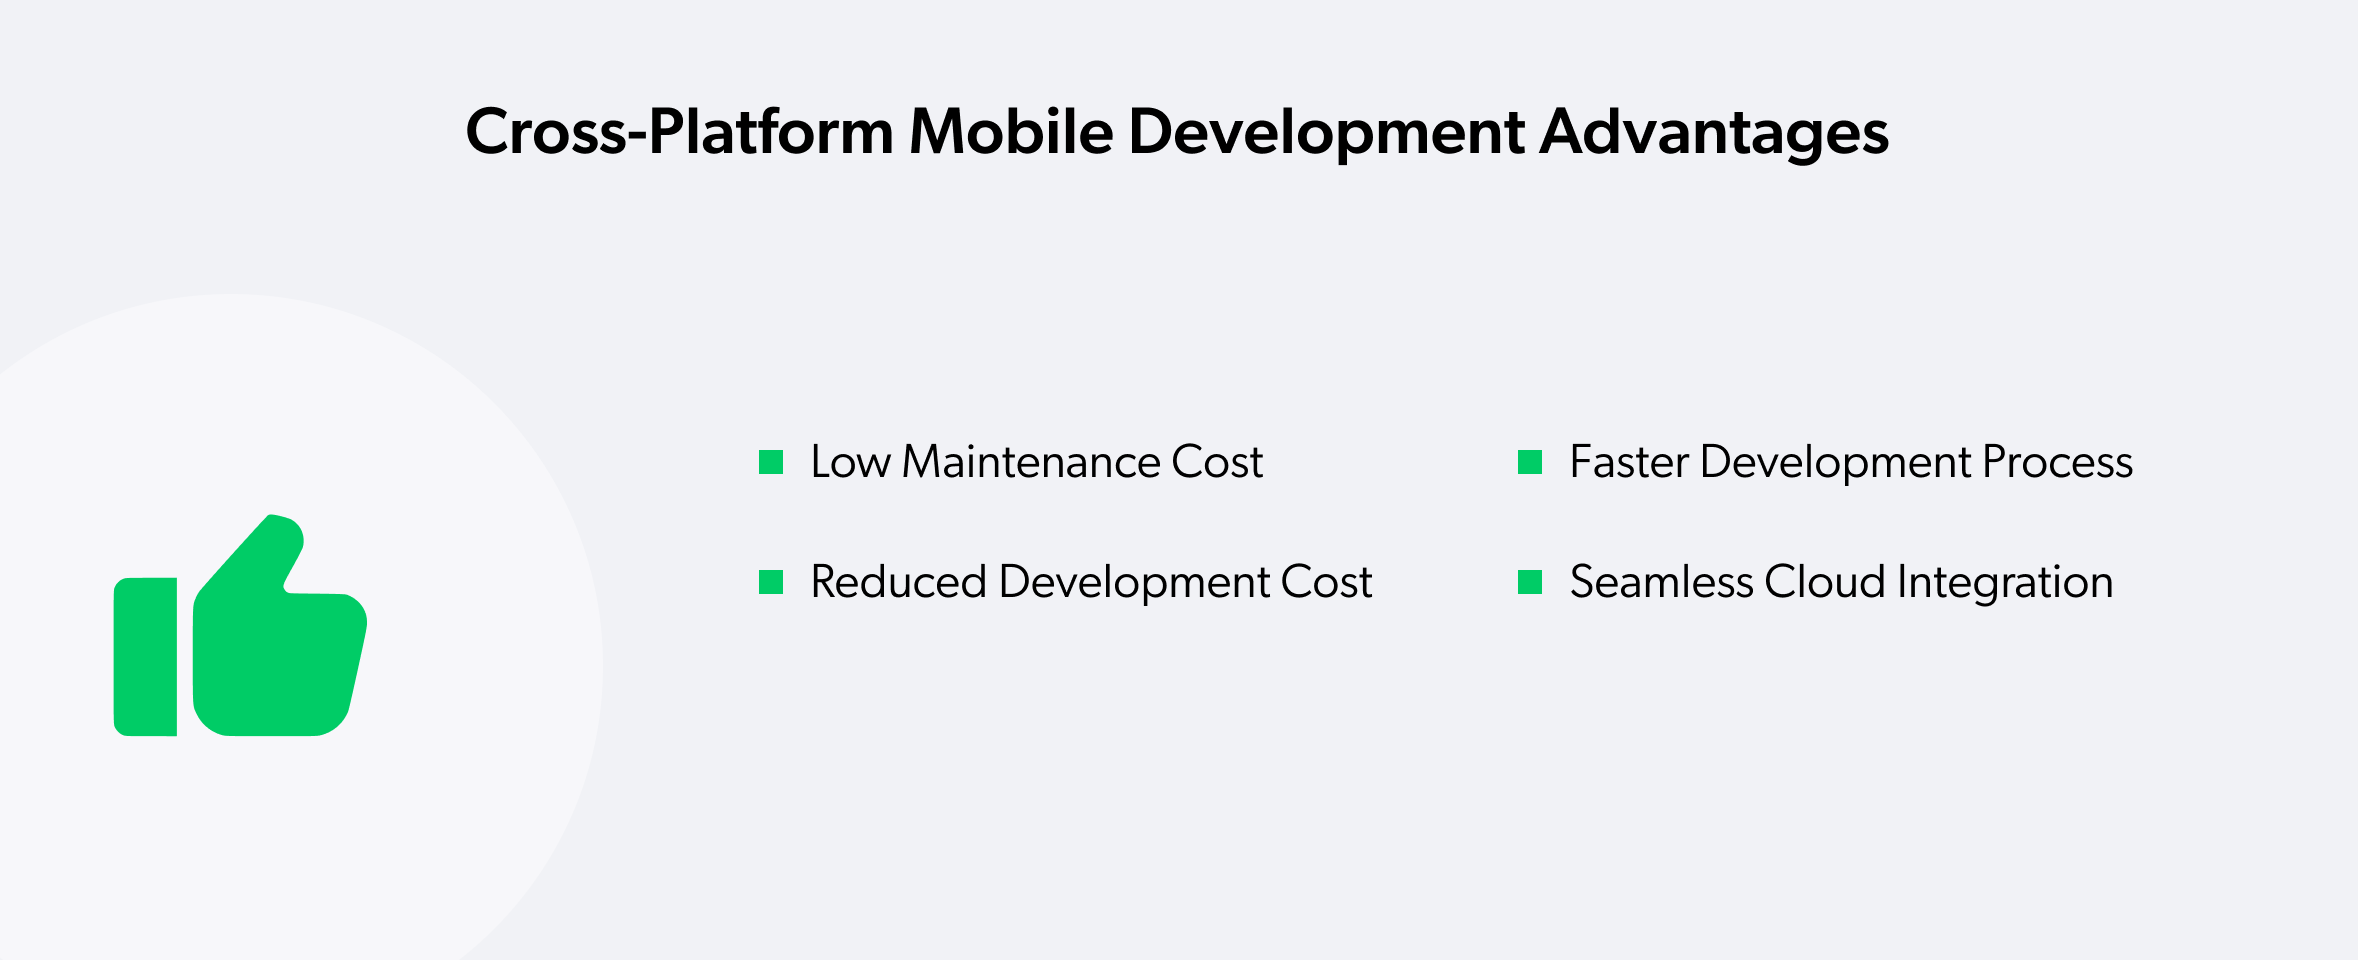 Cross-Platform Mobile Development Advantages